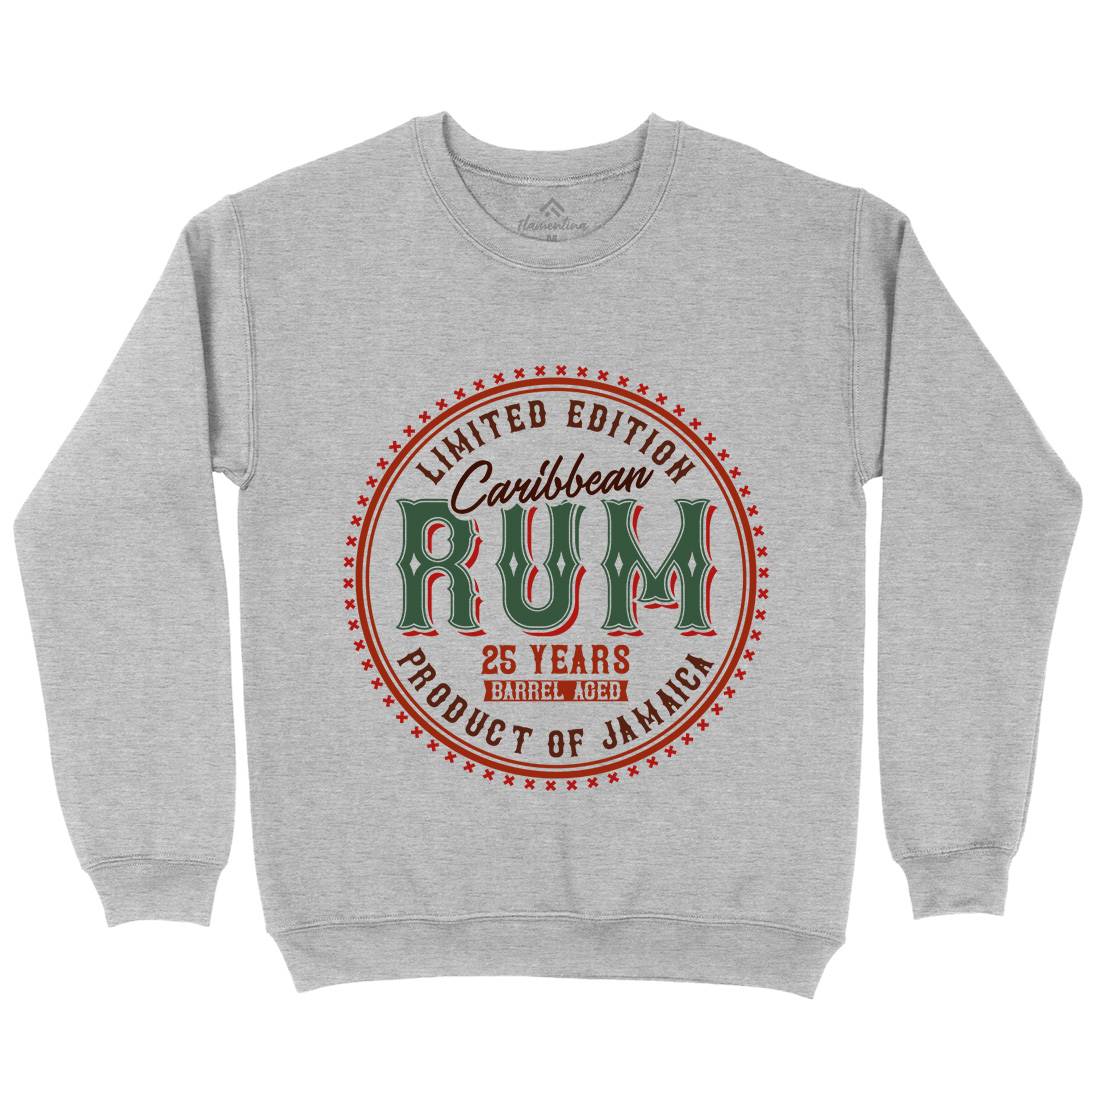 Caribbean Rum Kids Crew Neck Sweatshirt Drinks C816